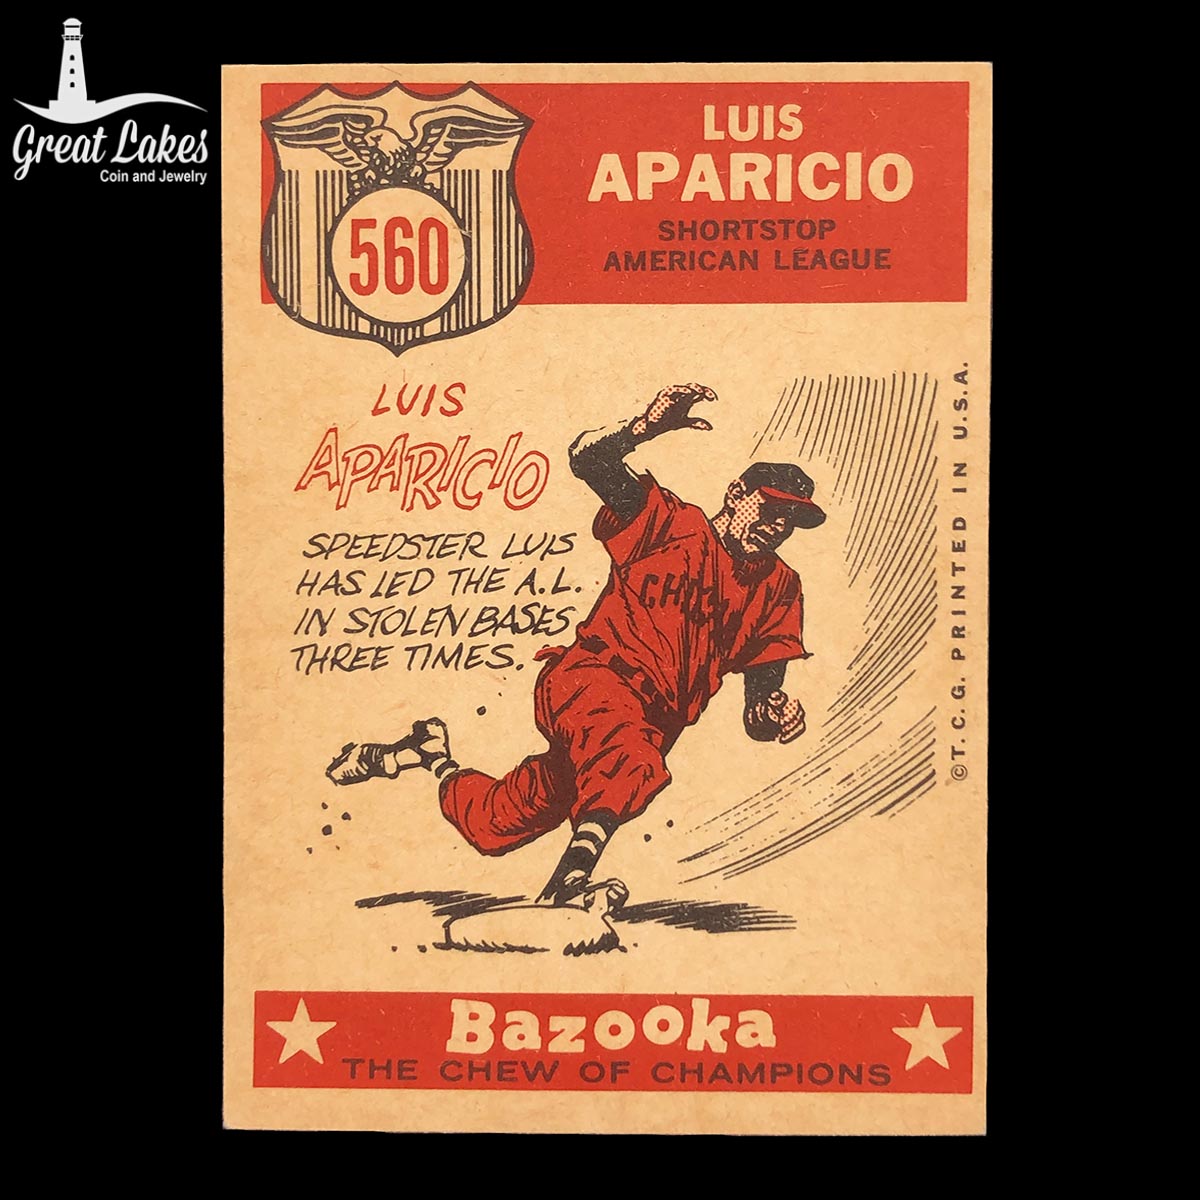 1959 Topps All-Star Luis Aparicio Card #560